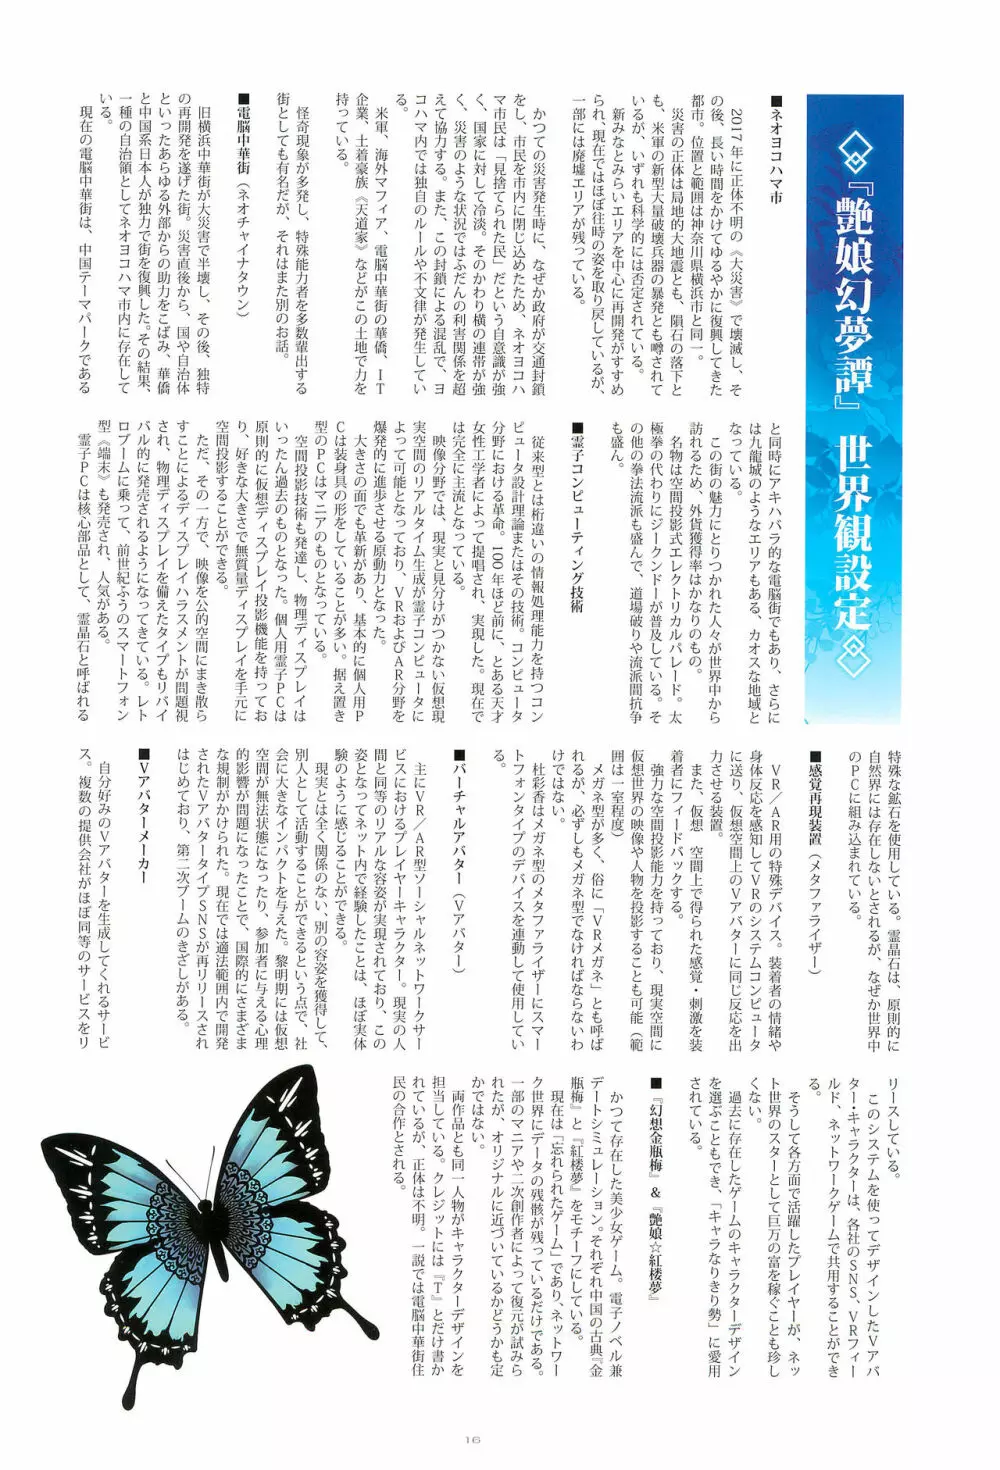 Tony MAGAZINE SP 秘録・艶娘幻夢譚 16ページ